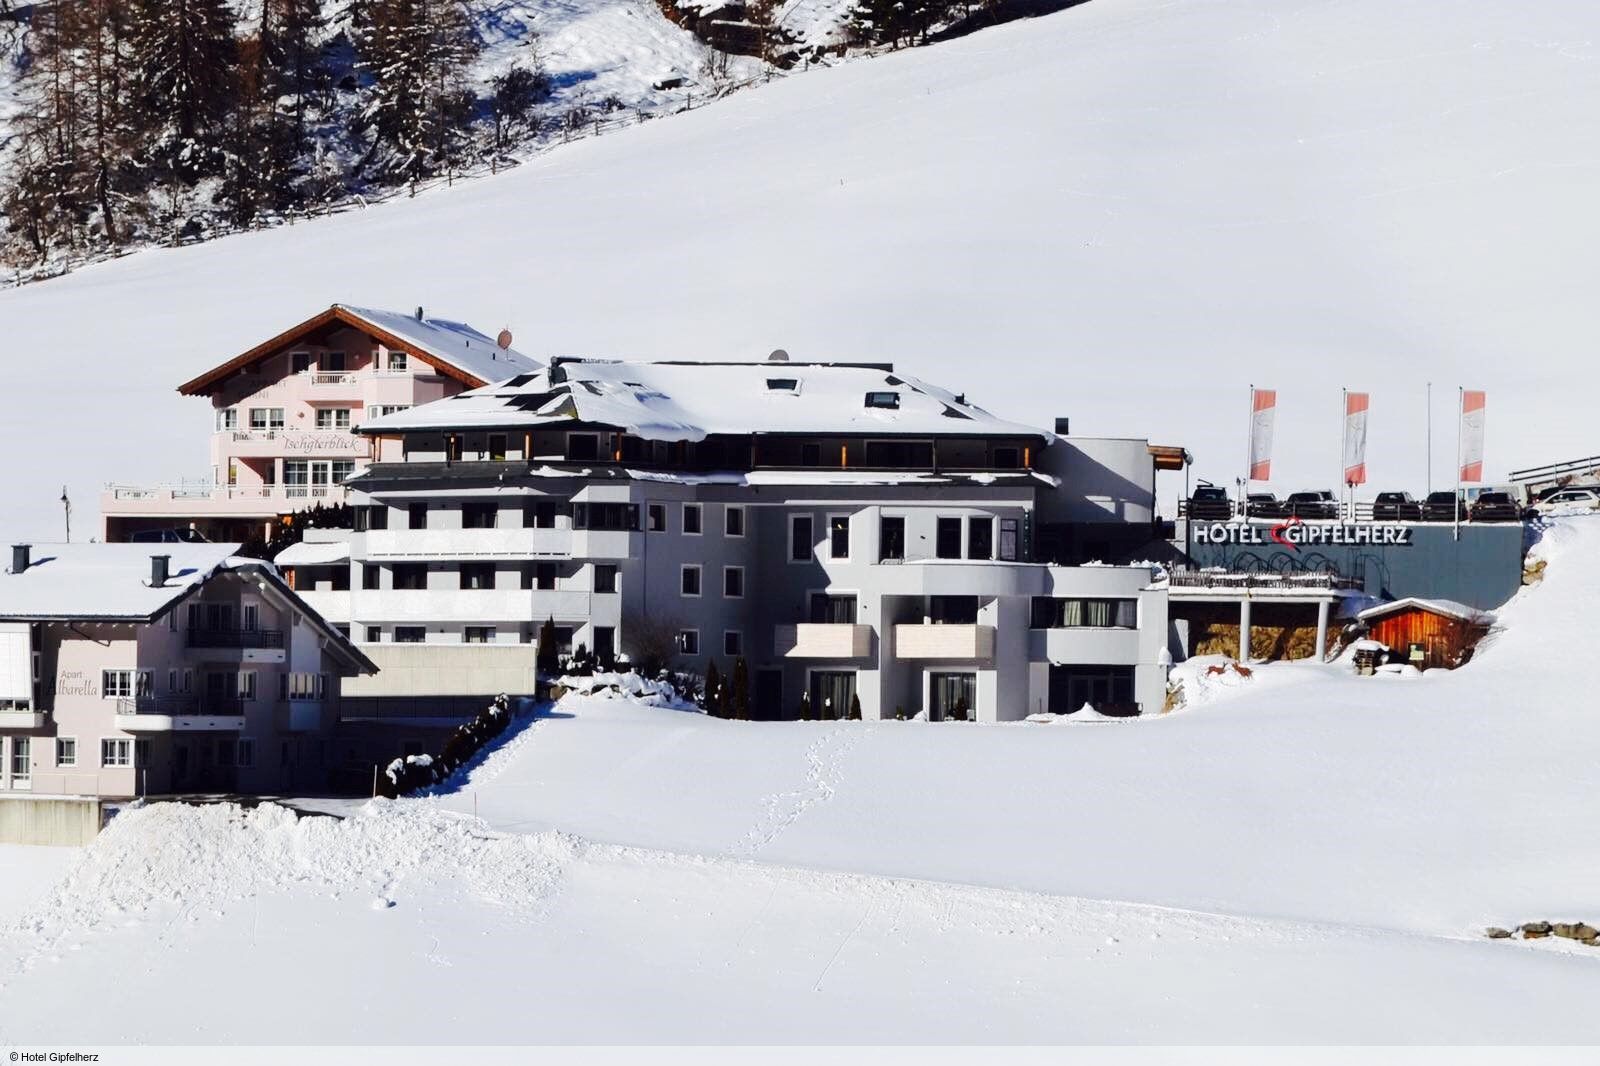 Oostenrijk - Hotel Gipfelherz